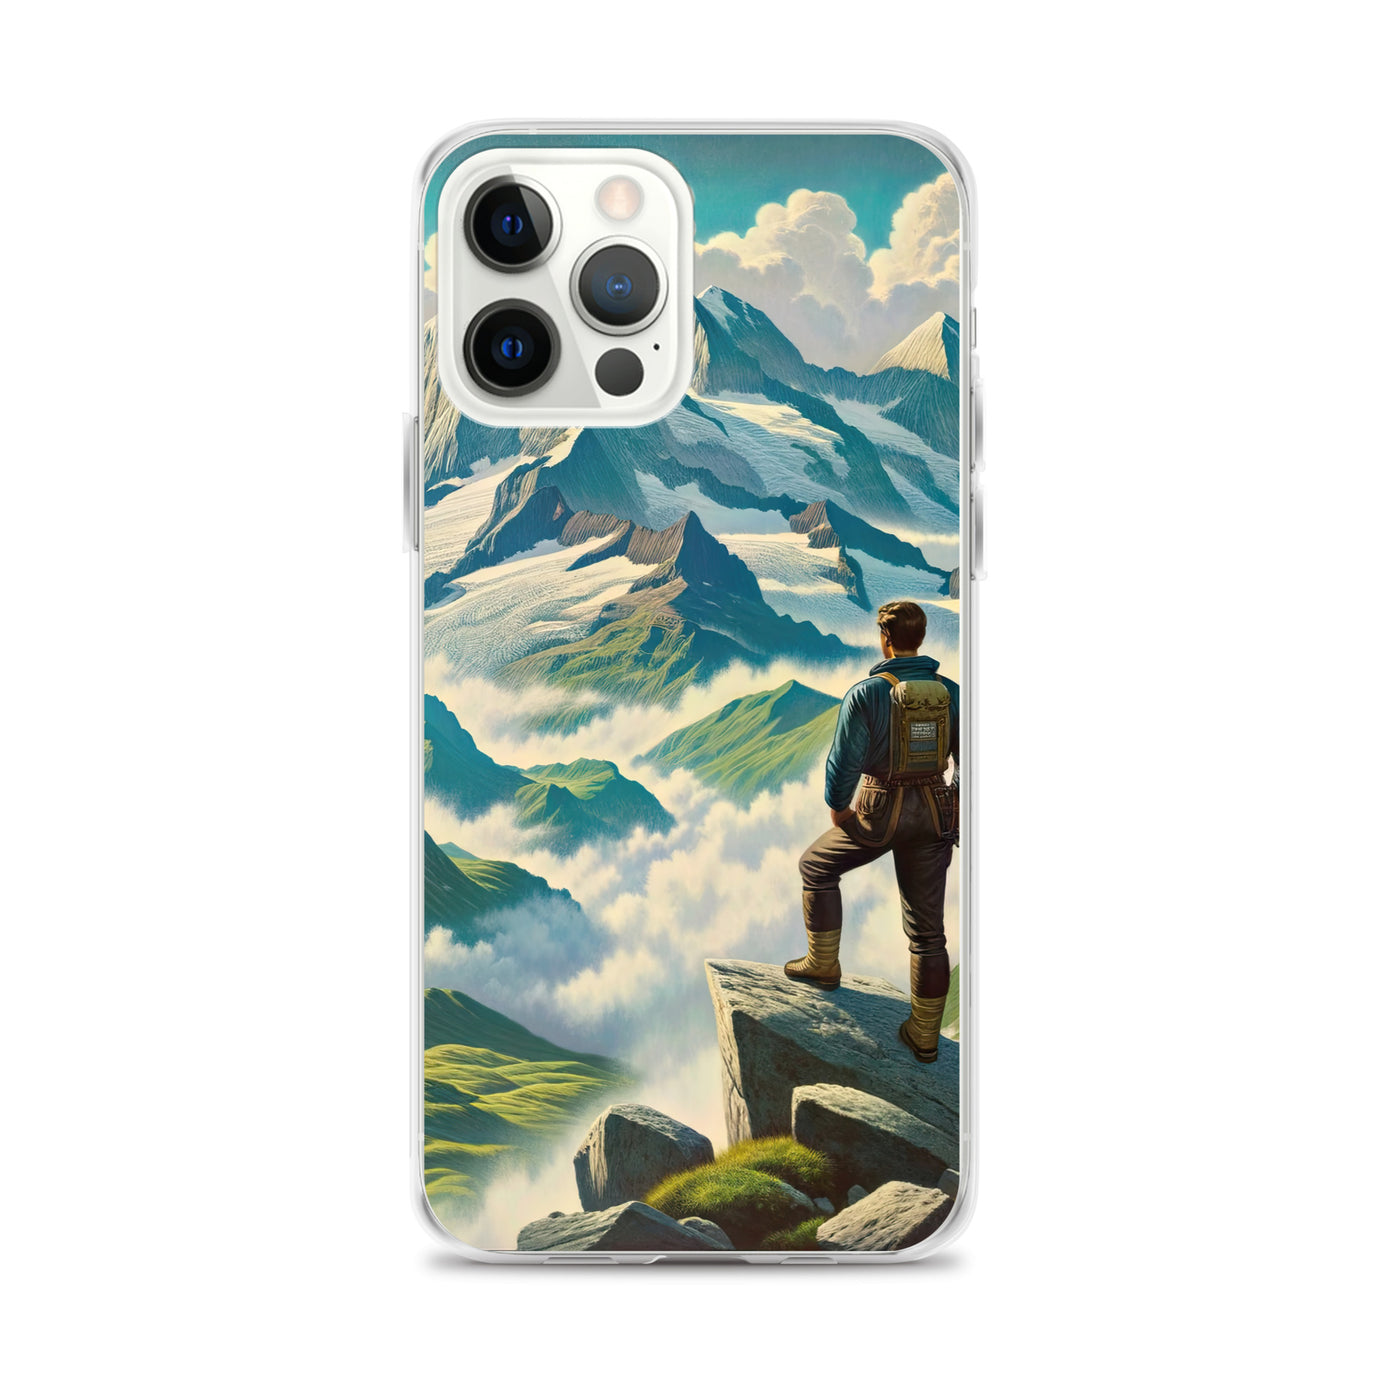 Panoramablick der Alpen mit Wanderer auf einem Hügel und schroffen Gipfeln - iPhone Schutzhülle (durchsichtig) wandern xxx yyy zzz iPhone 12 Pro Max